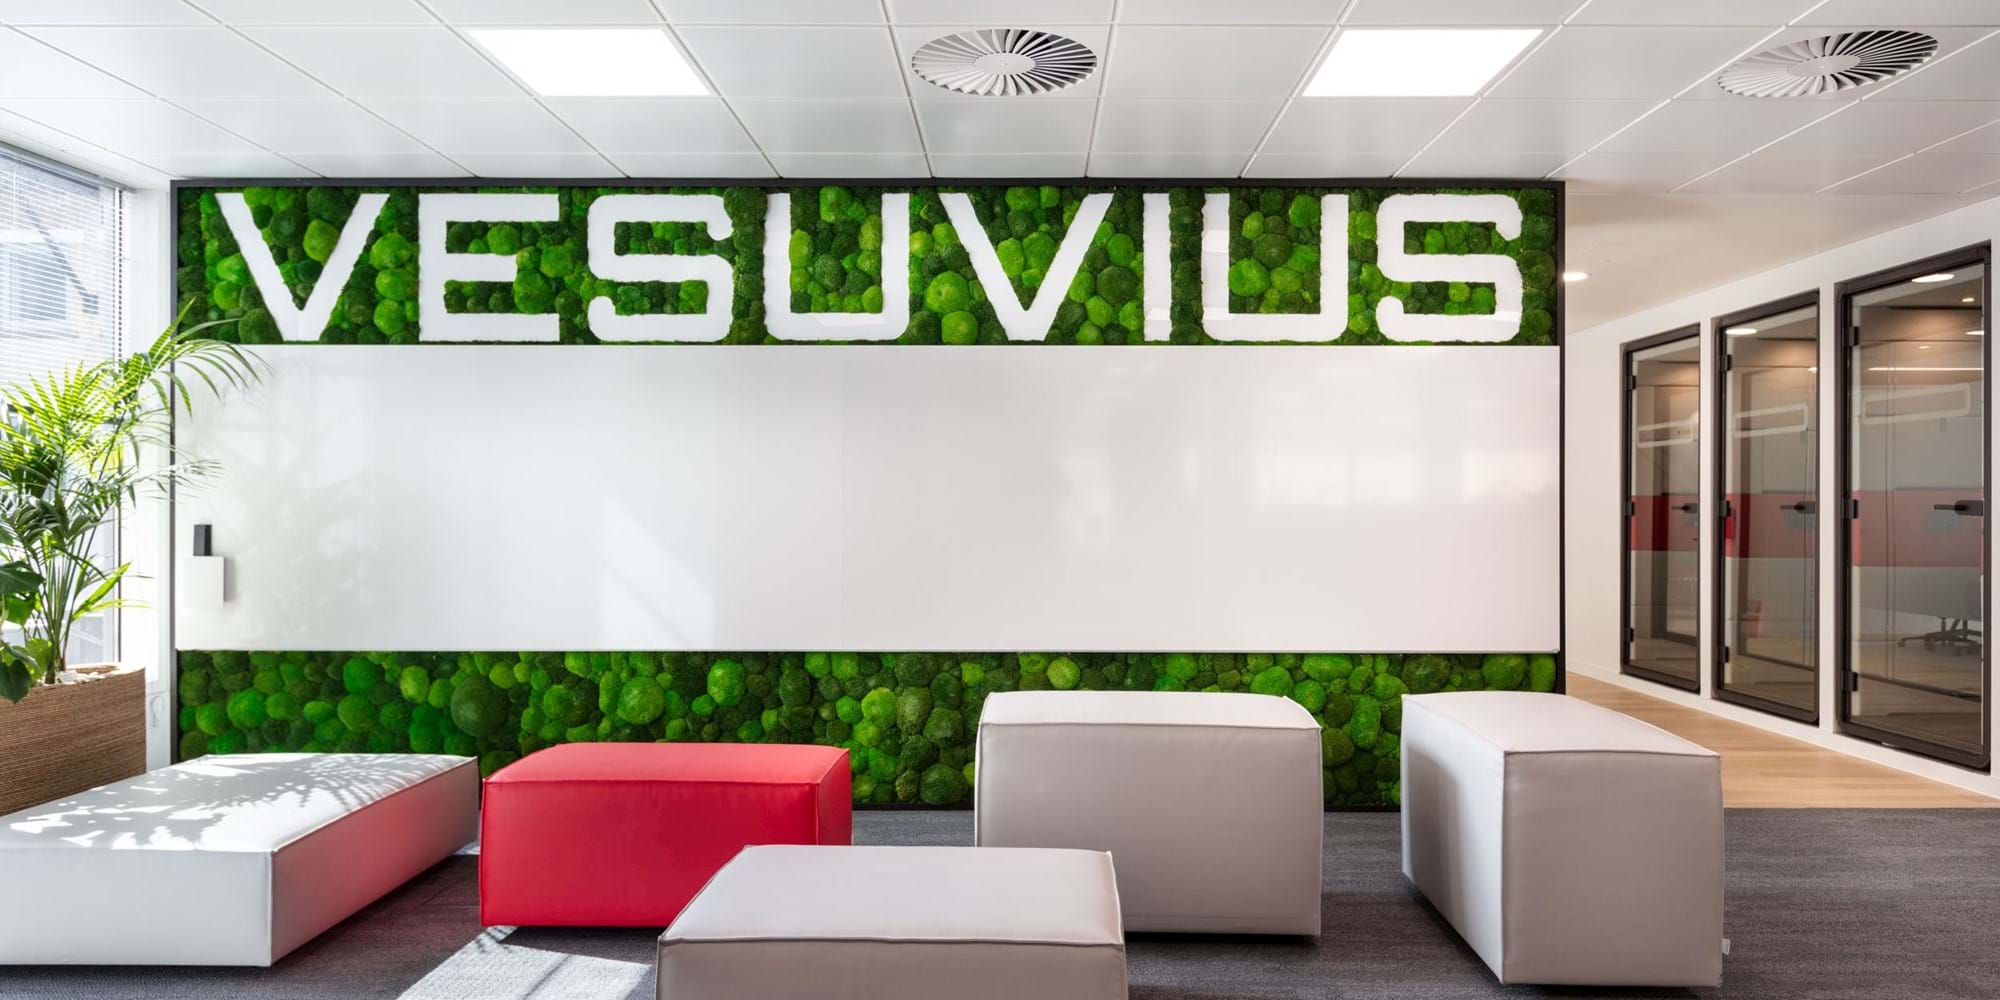 Modus Workspace office design, fit out and refurbishment - Vesuvius - Modus_Vesuvius-2.jpg